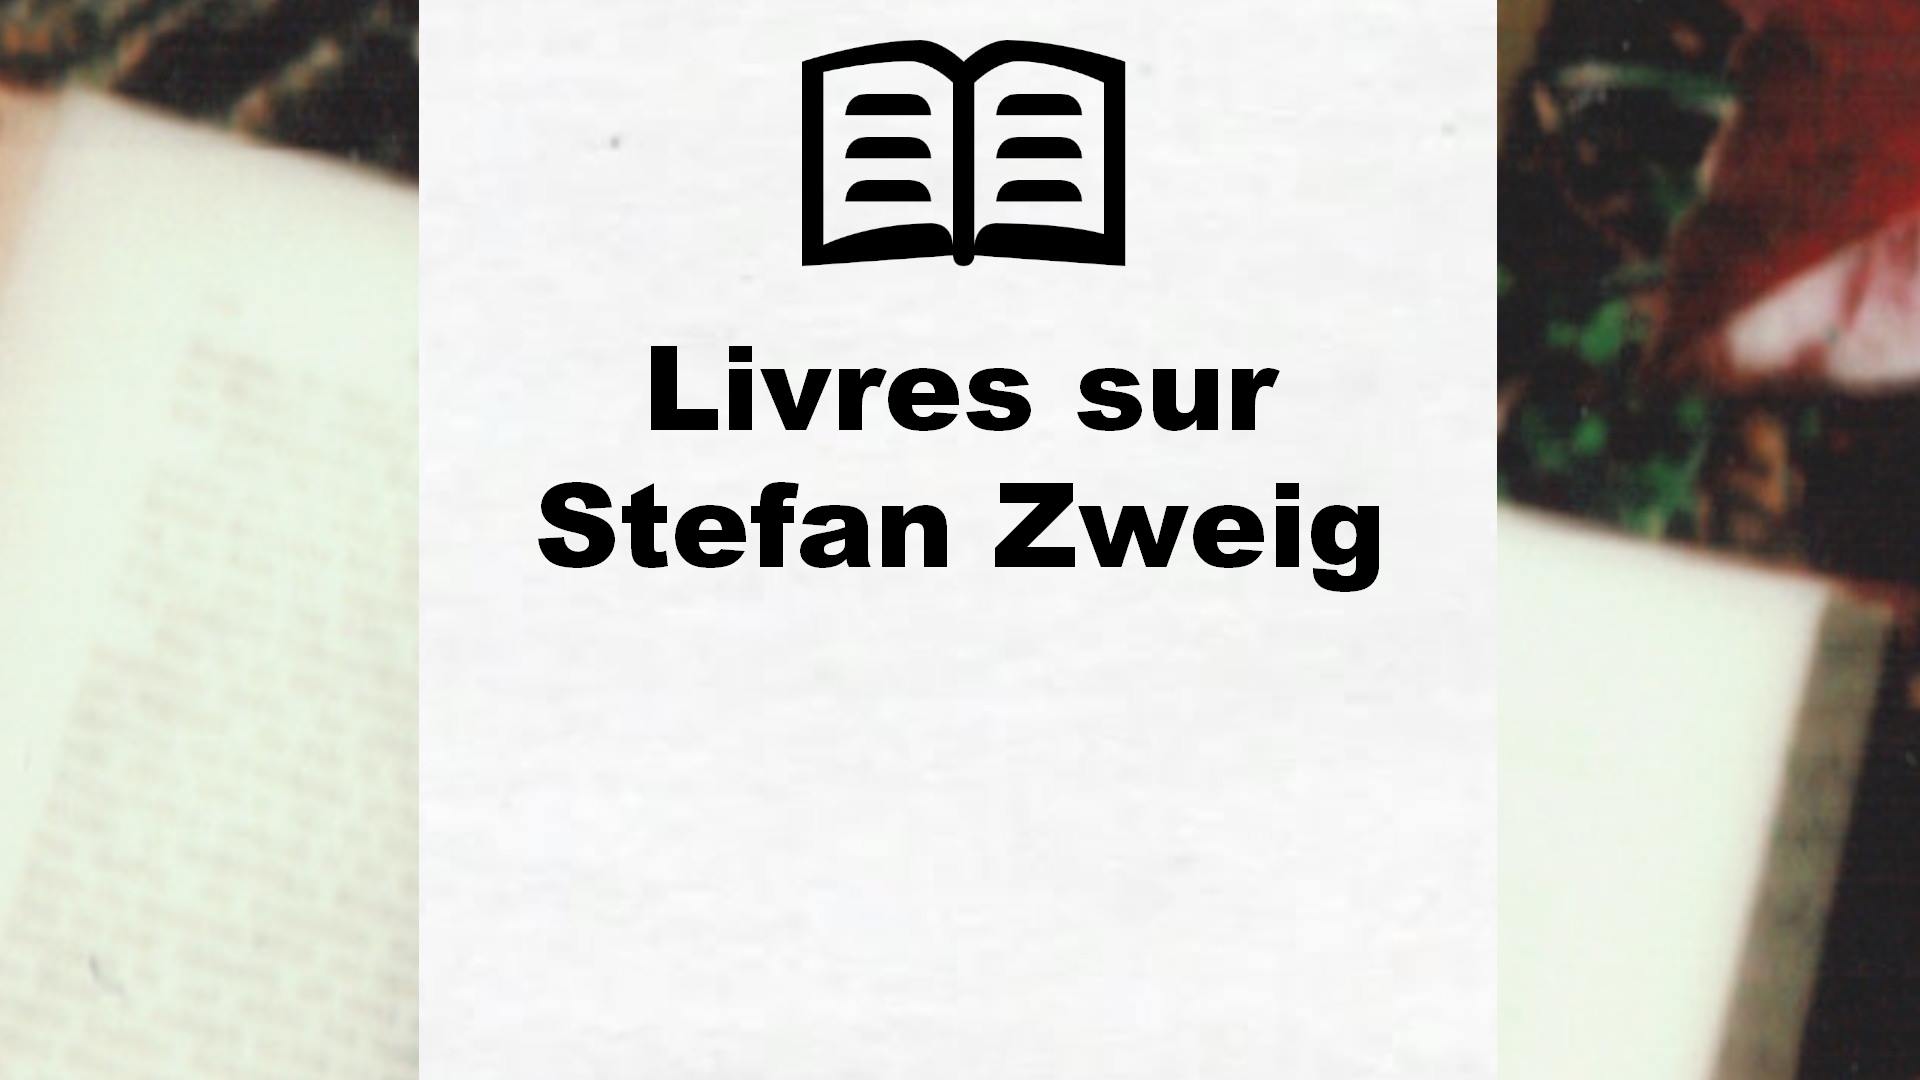 Livres sur Stefan Zweig